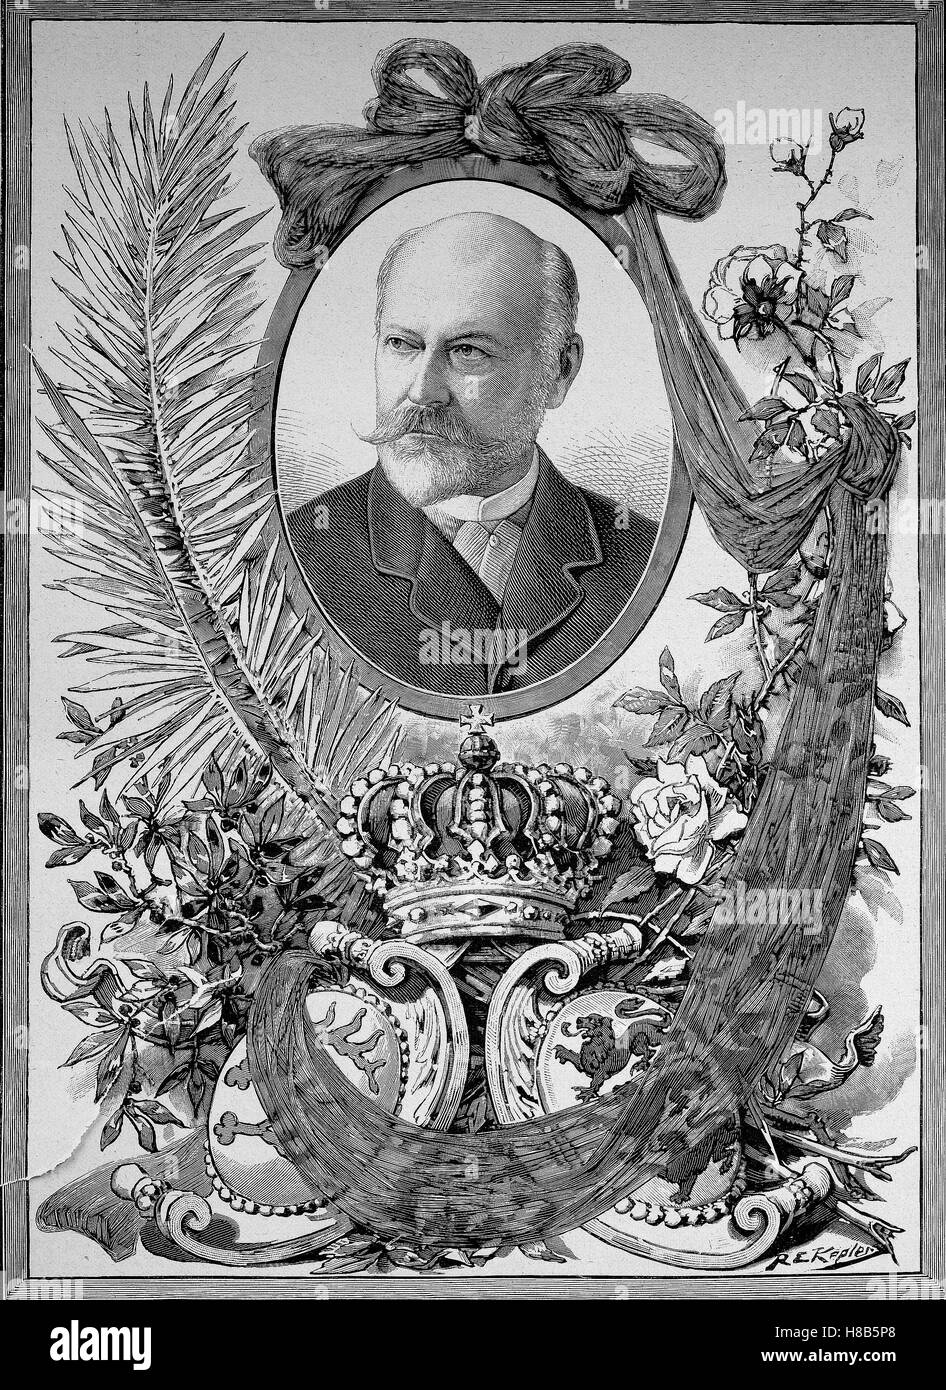 Charles, Karl Friedrich Alexander, Koenig von Wuerttemberg; 6. März 1823 - 6. Oktober 1891, war König von Württemberg, von 25. Juni 1864 bis zu seinem Tod im Jahre 1891, Holzschnitt aus dem Jahre 1892 Stockfoto